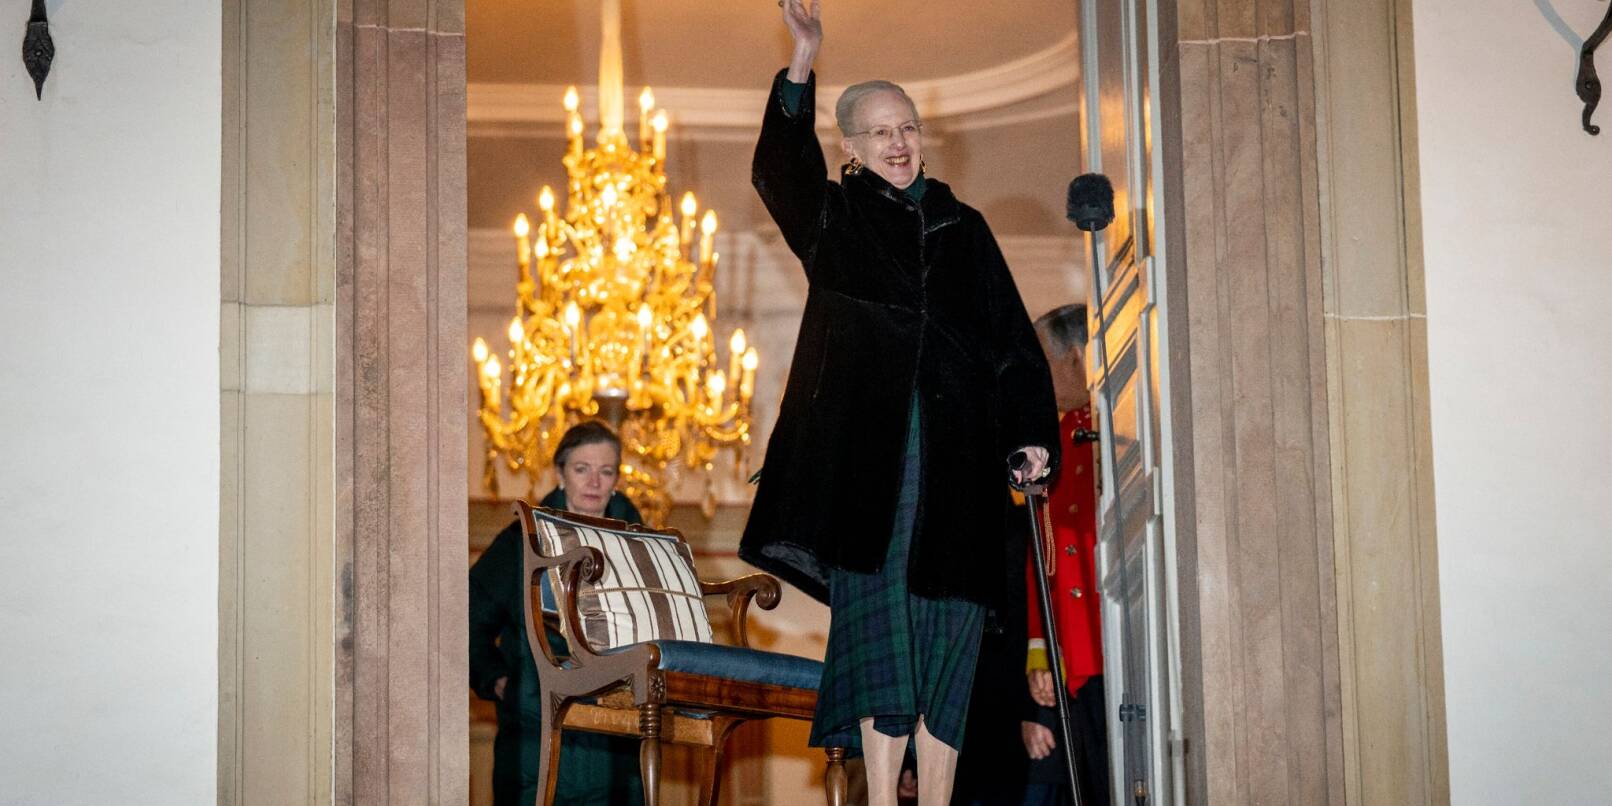 Dänemarks Königin Margrethe II. in Schloss Fredensborg. Es ist der erste öffentliche Auftritt für sie seit ihrer Rückenoperation.